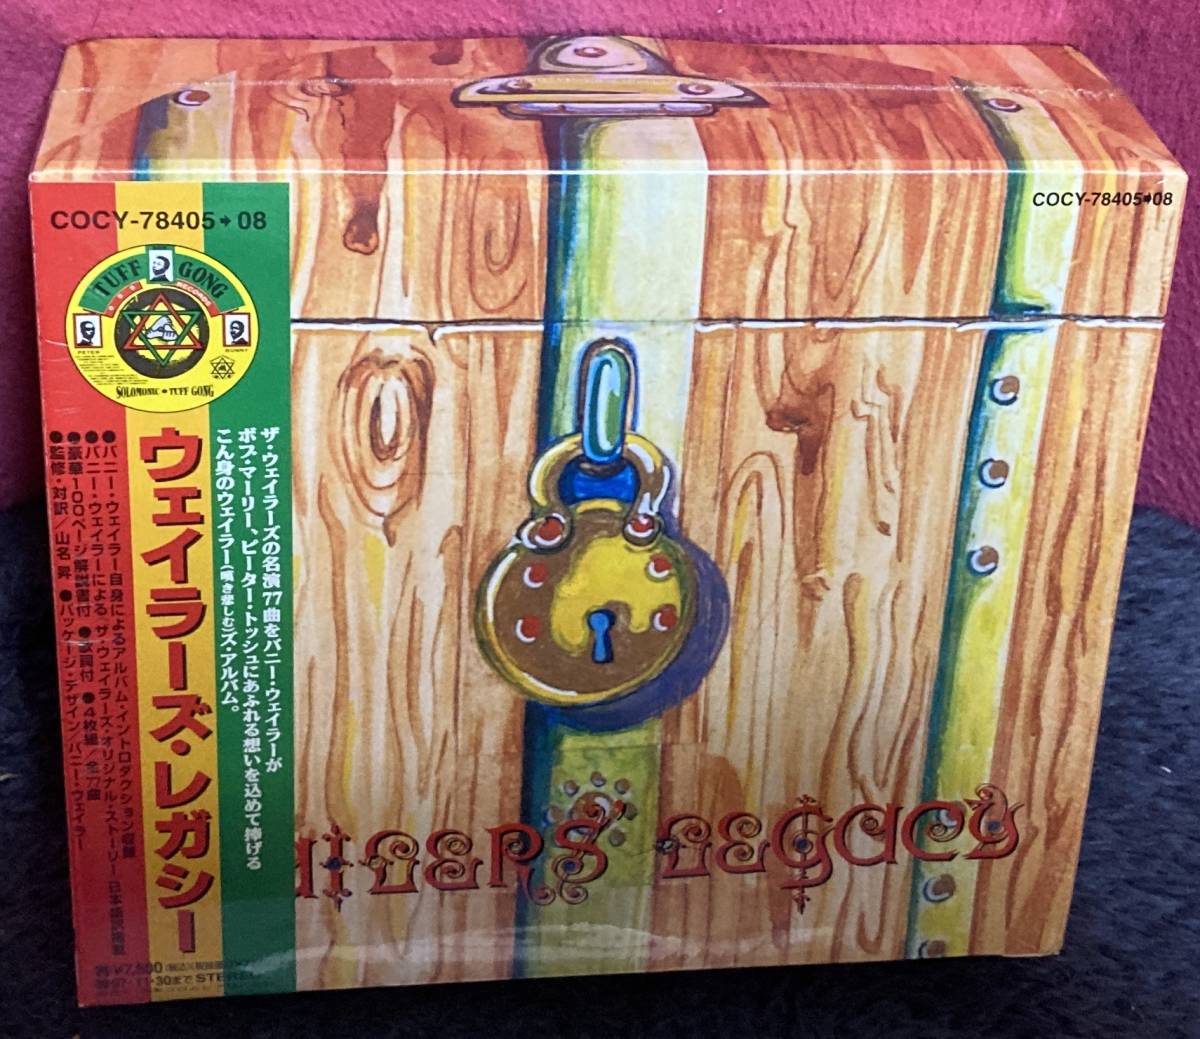 世界的にも超貴重な4CDボックス!!/BOB MARLEY & THE WAILERS『ボブマーリー＆ウェイラーズレガシー』BOX仕様 全部揃い 早い者勝ちです～!!